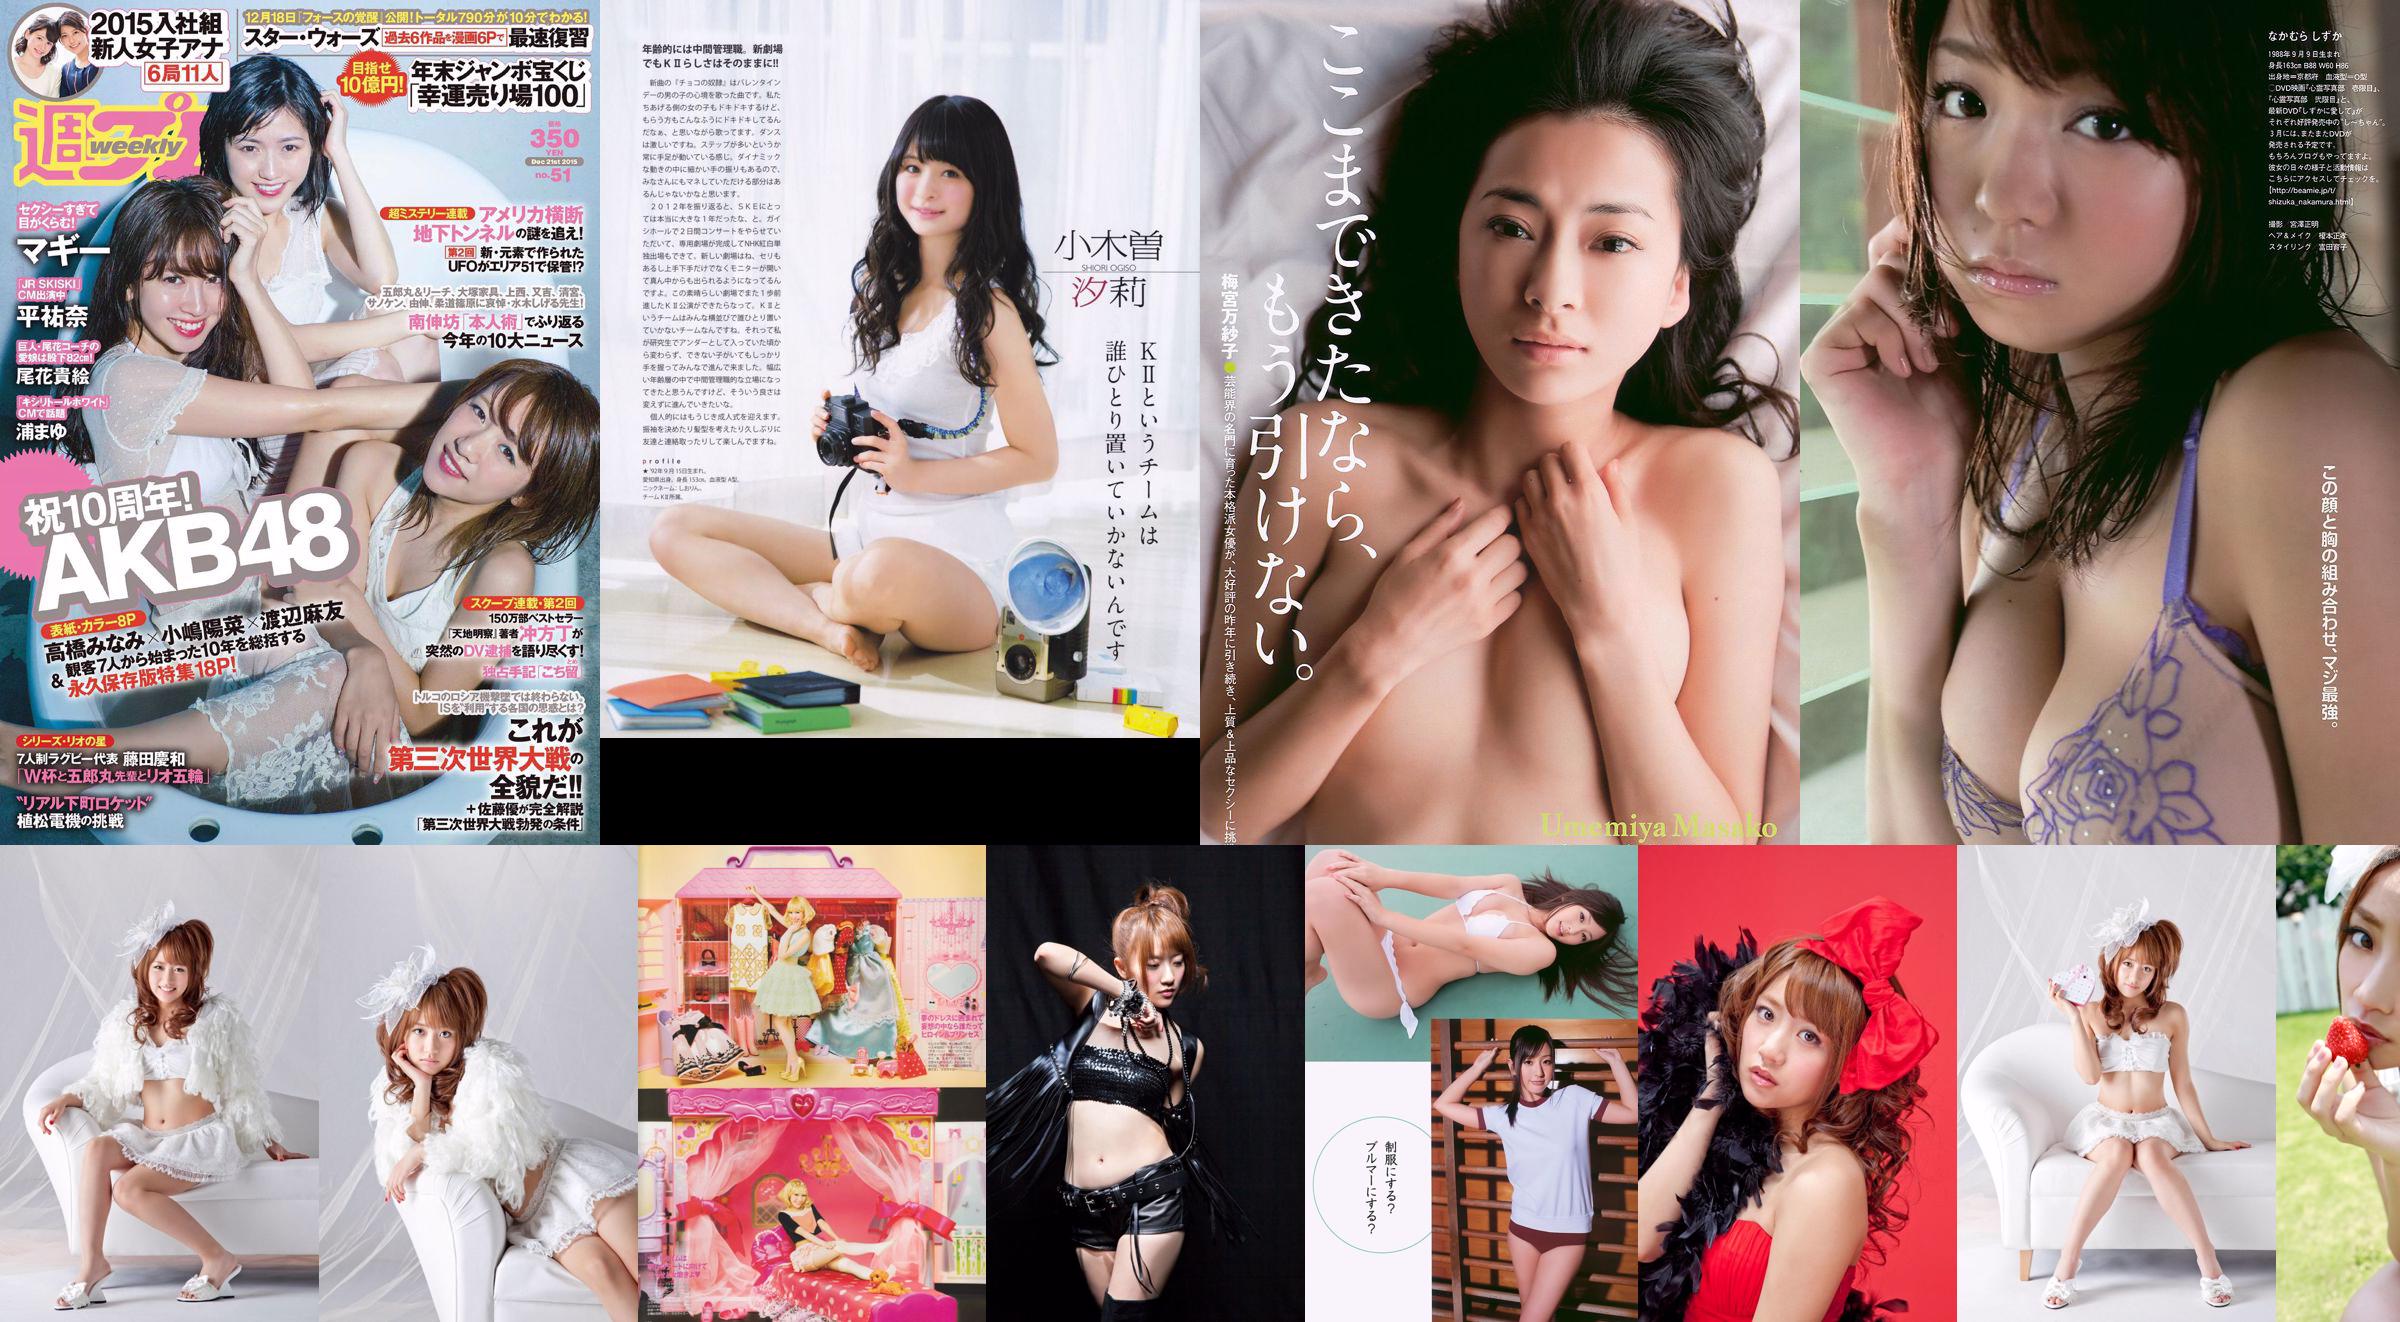 Minami Takahashi Haruna Kojima Mayu Watanabe Maggie Takae Obana Yuna Taira Mayu Ura Mitadera En [Weekly Playboy] 2015 No.51 Photo No.1d45a5 Page 1